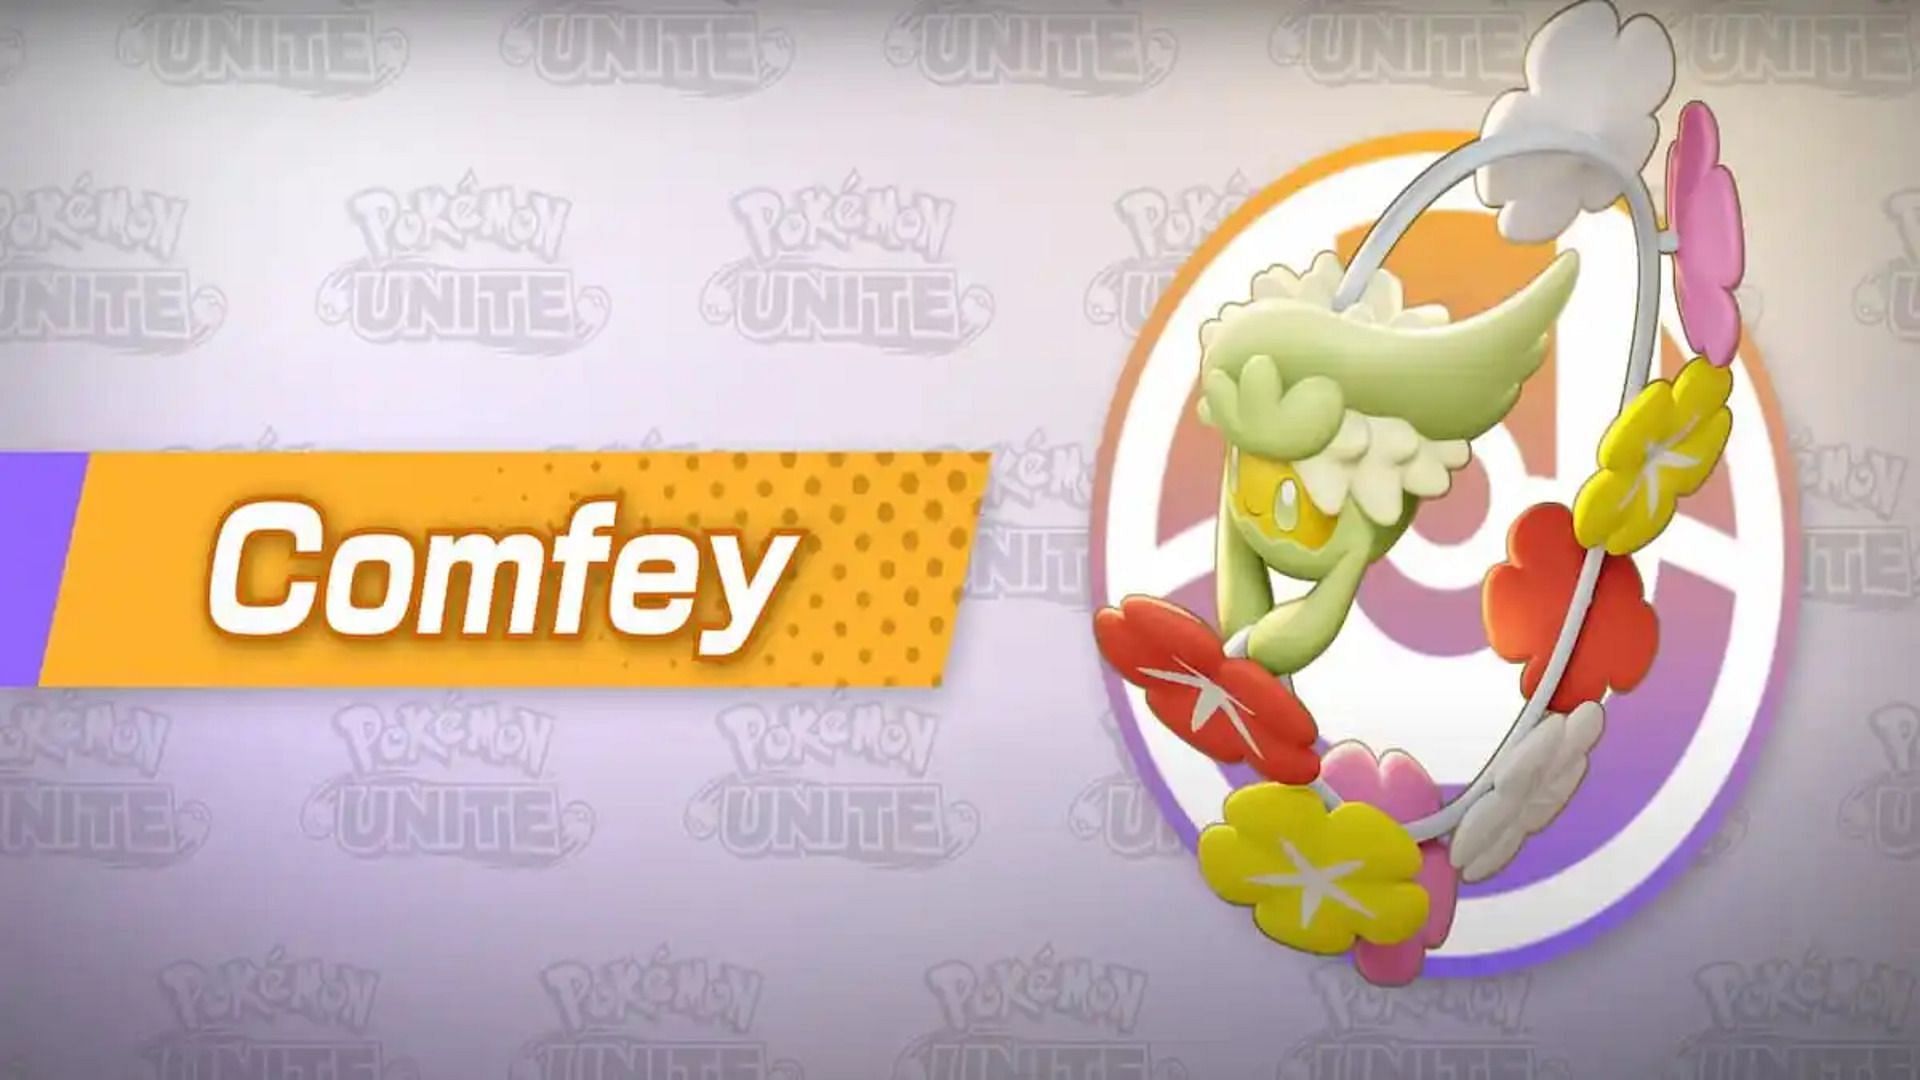 Official artwork for Comfey in Pokemon Unite (Image via The Pokemon Company)